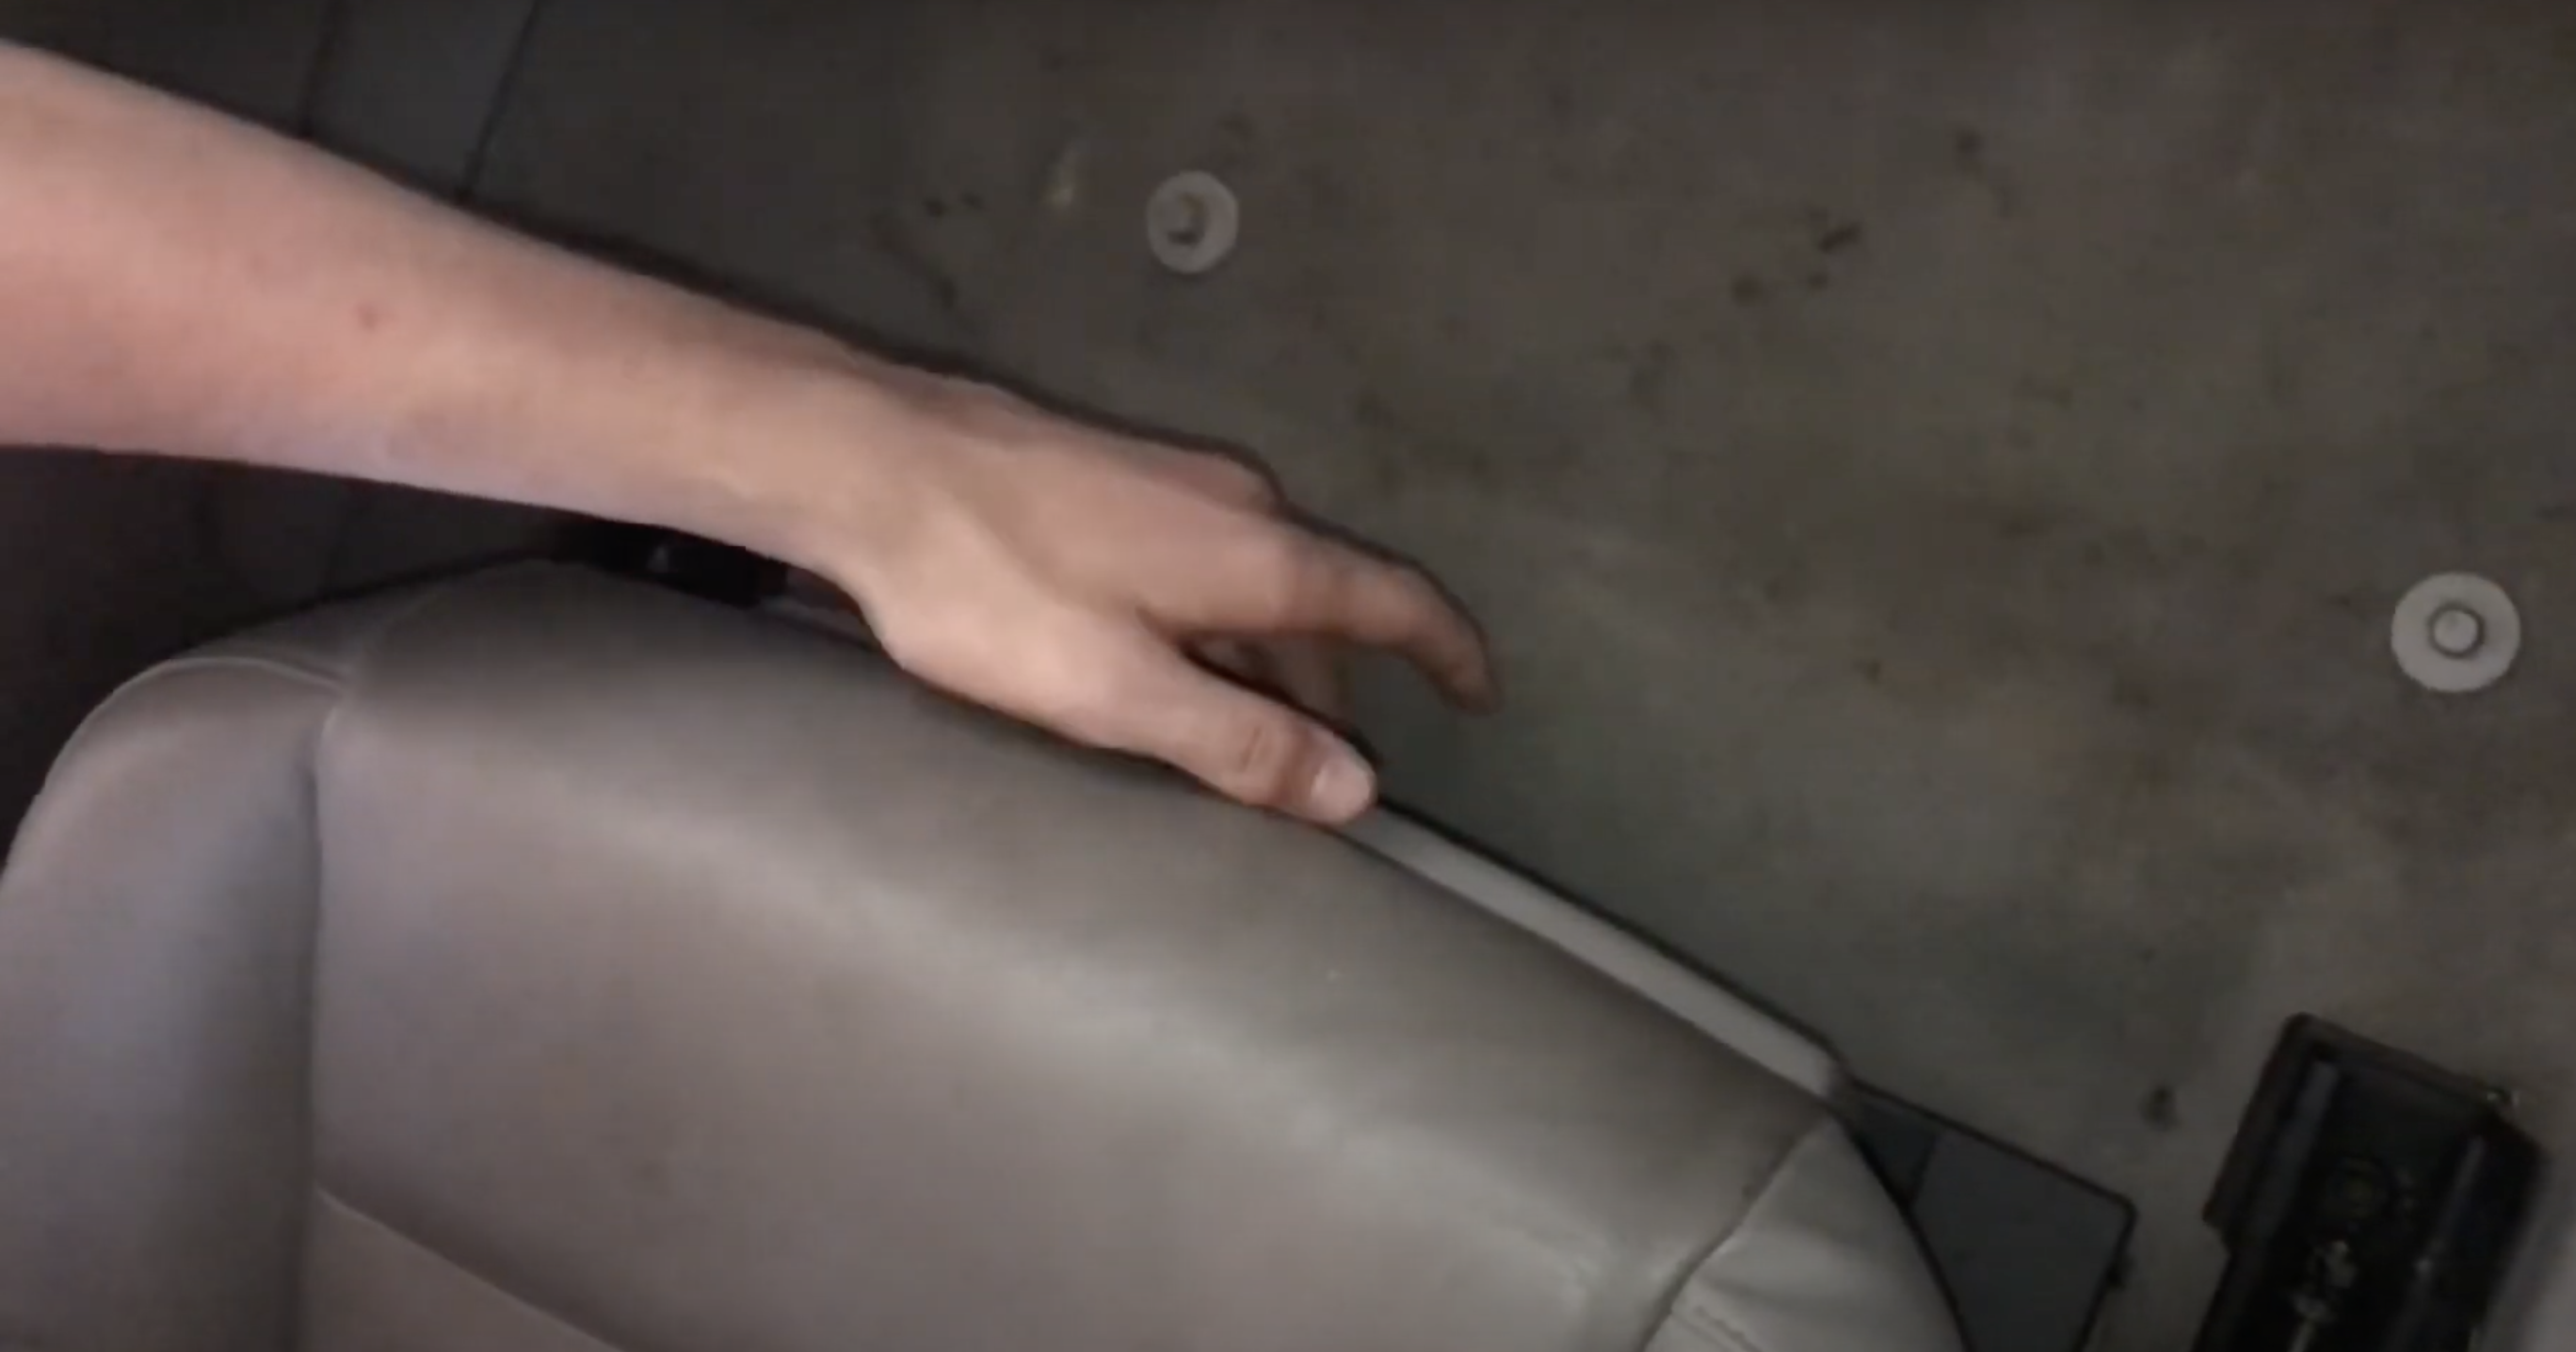 Autofahrer enthüllten den versteckten Stauraum unter dem Vordersitz